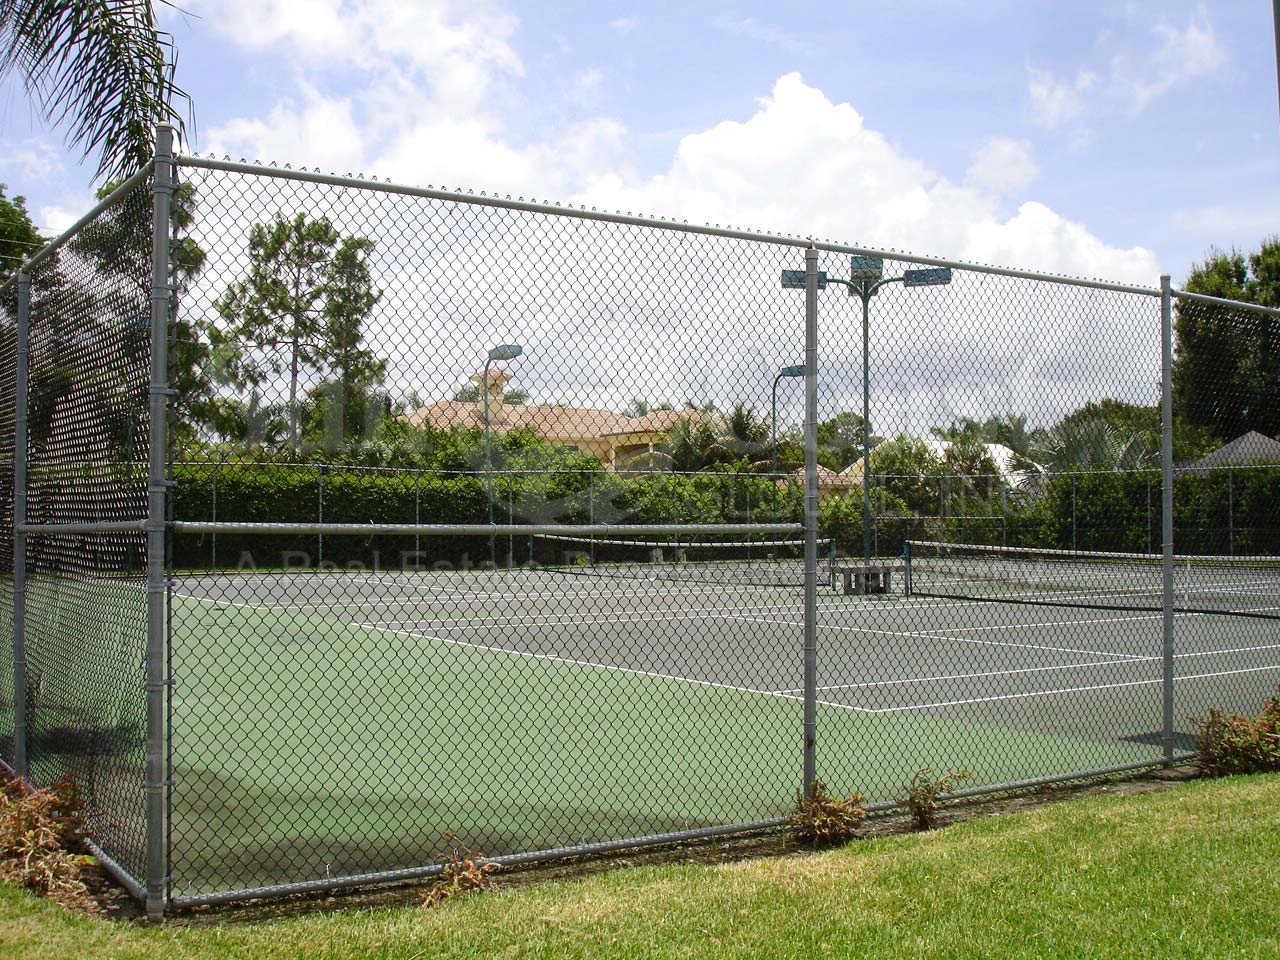 REGENT PARK Tennis Courts